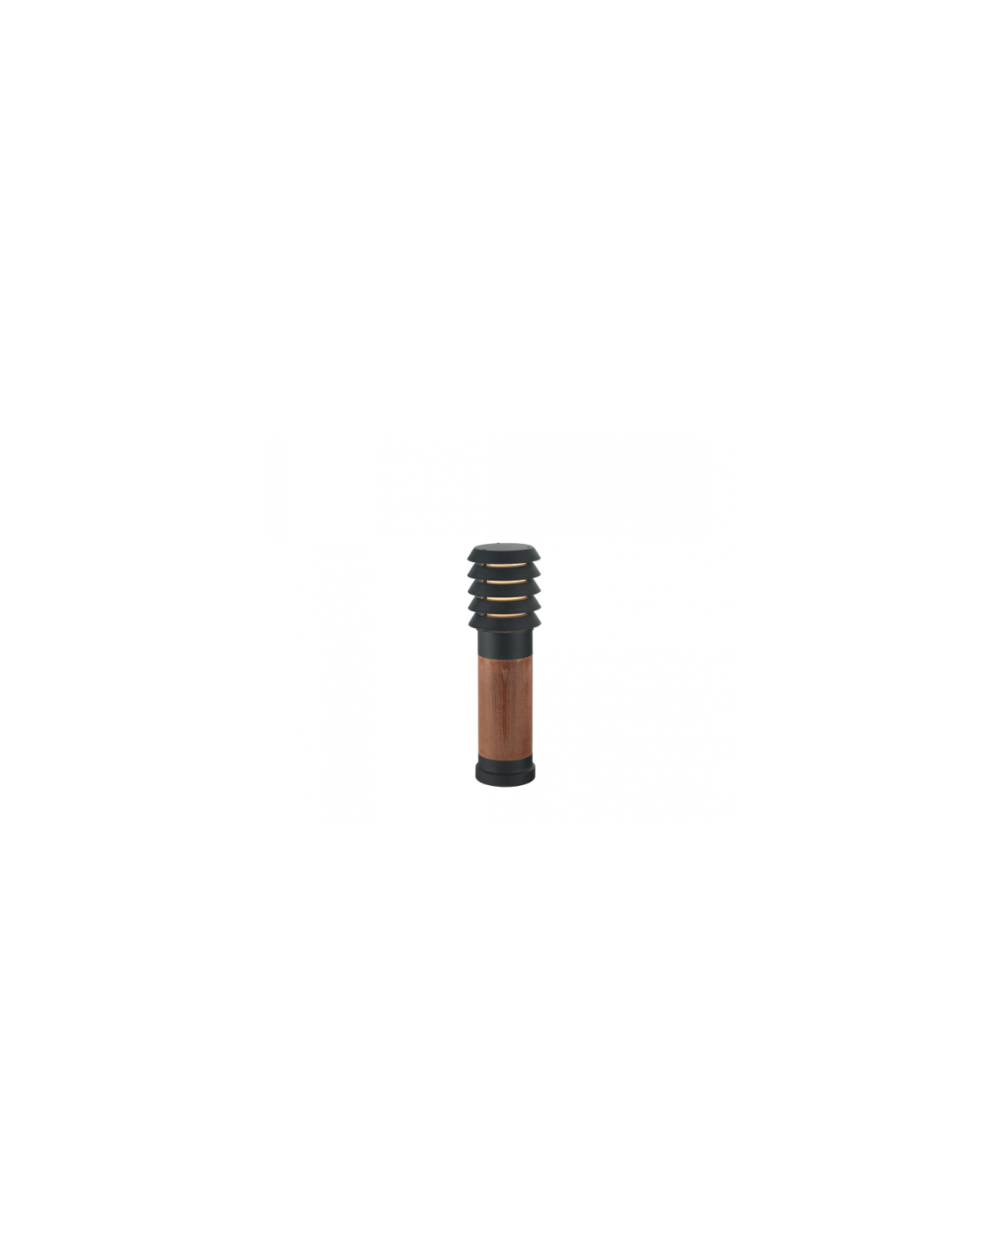 Lampa stojąca / słupkowa Alta 49cm (drewno) - Norlys zewnętrzna lampa ogrodowa okucia czarne lub ocynk